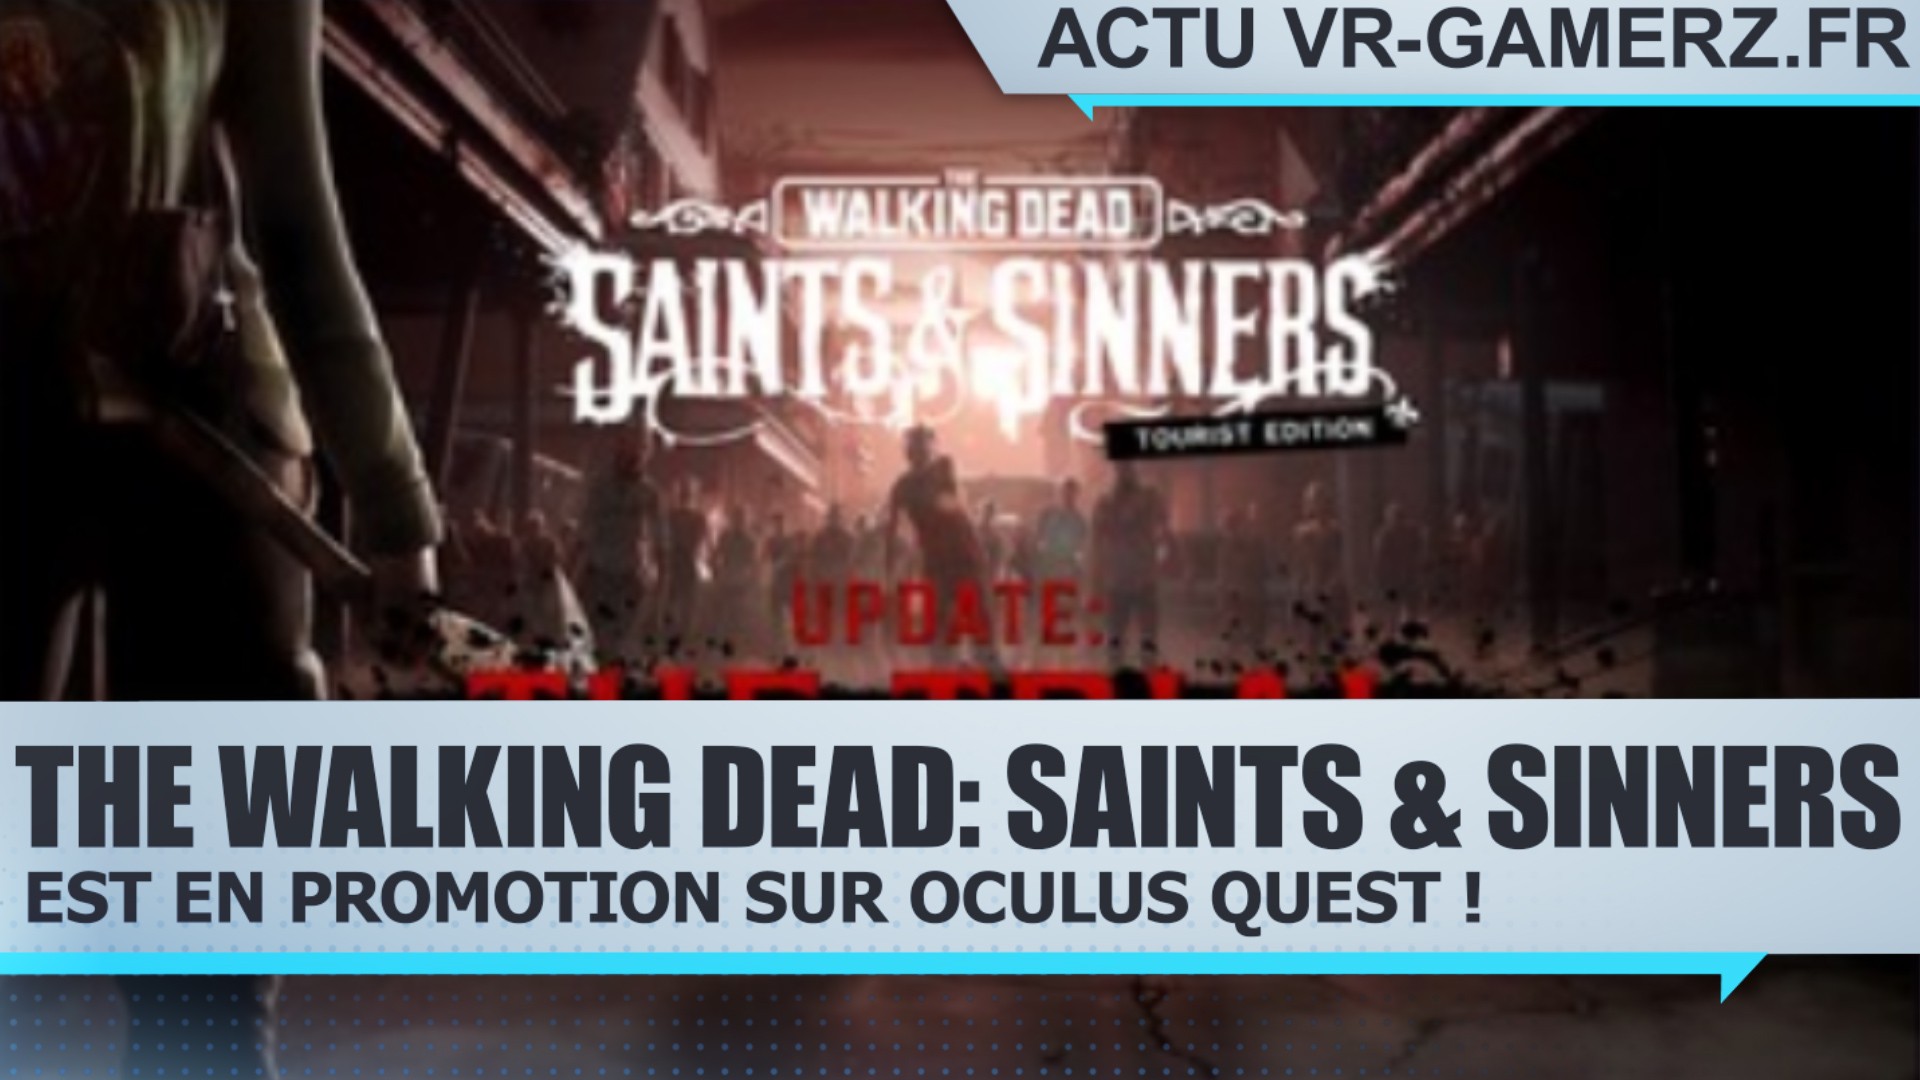 The Walking Dead: Saints & Sinners est en promotion sur Oculus quest !